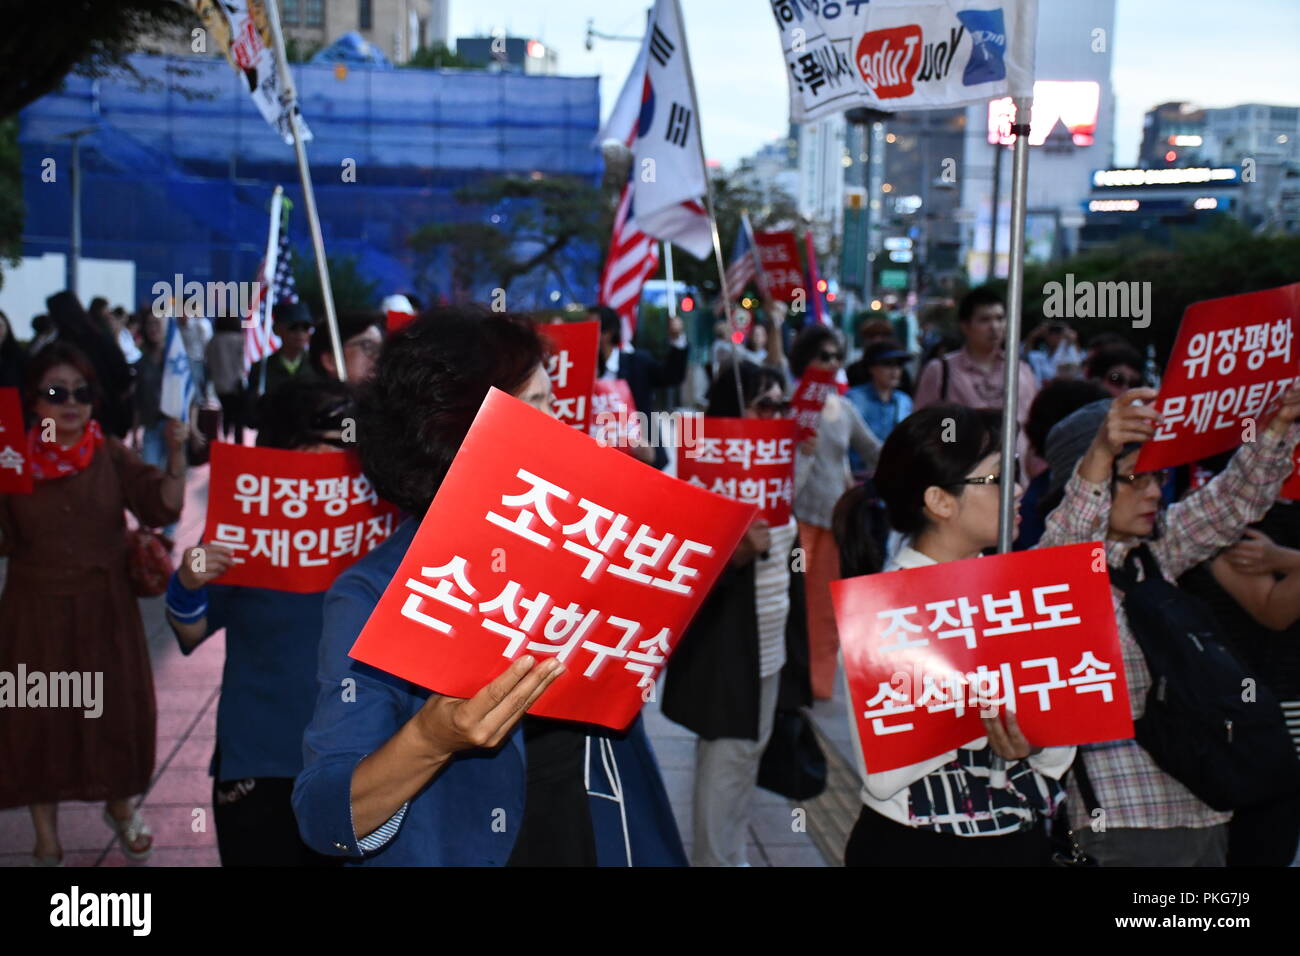 14 Settembre, 2018. Seul in Corea. I dimostranti si sono riuniti a Seul per chiedere il rilascio delle destre commentatore e giornalista Byun Hee-jae su accuse di diffamazione nella sua segnalazione di una competitiva società di radiodiffusione. Byun è stato arrestato nel mese di maggio e il suo caso è attualmente dinanzi ai tribunali.Credit: Michael Davis/Alamy Live News Foto Stock